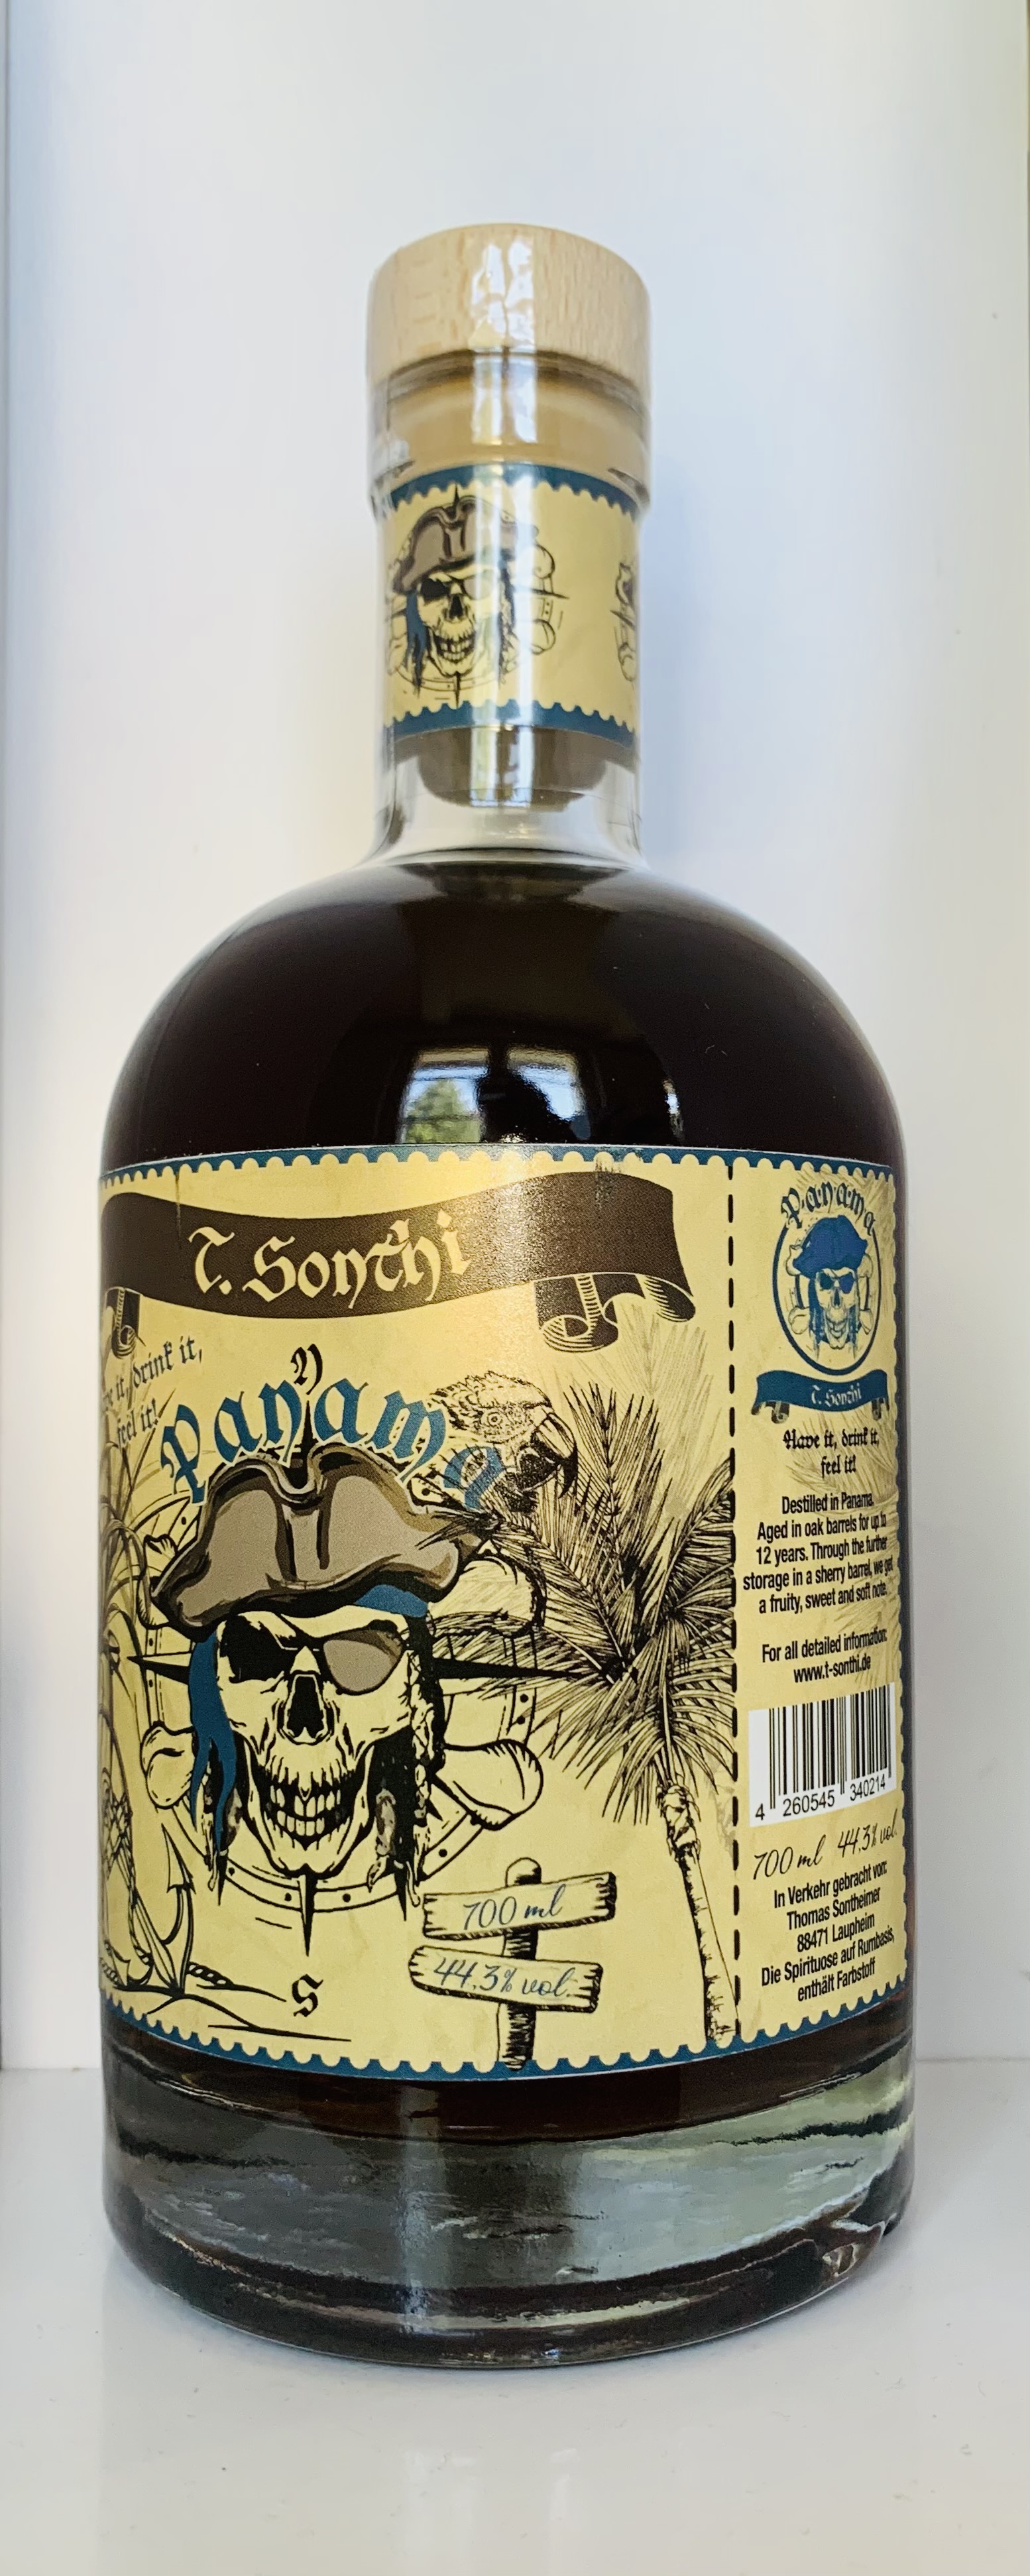 T.Sonthi Panama 12 Jahre Rum, gelagert in Bourbon und PX Sherry Fässer